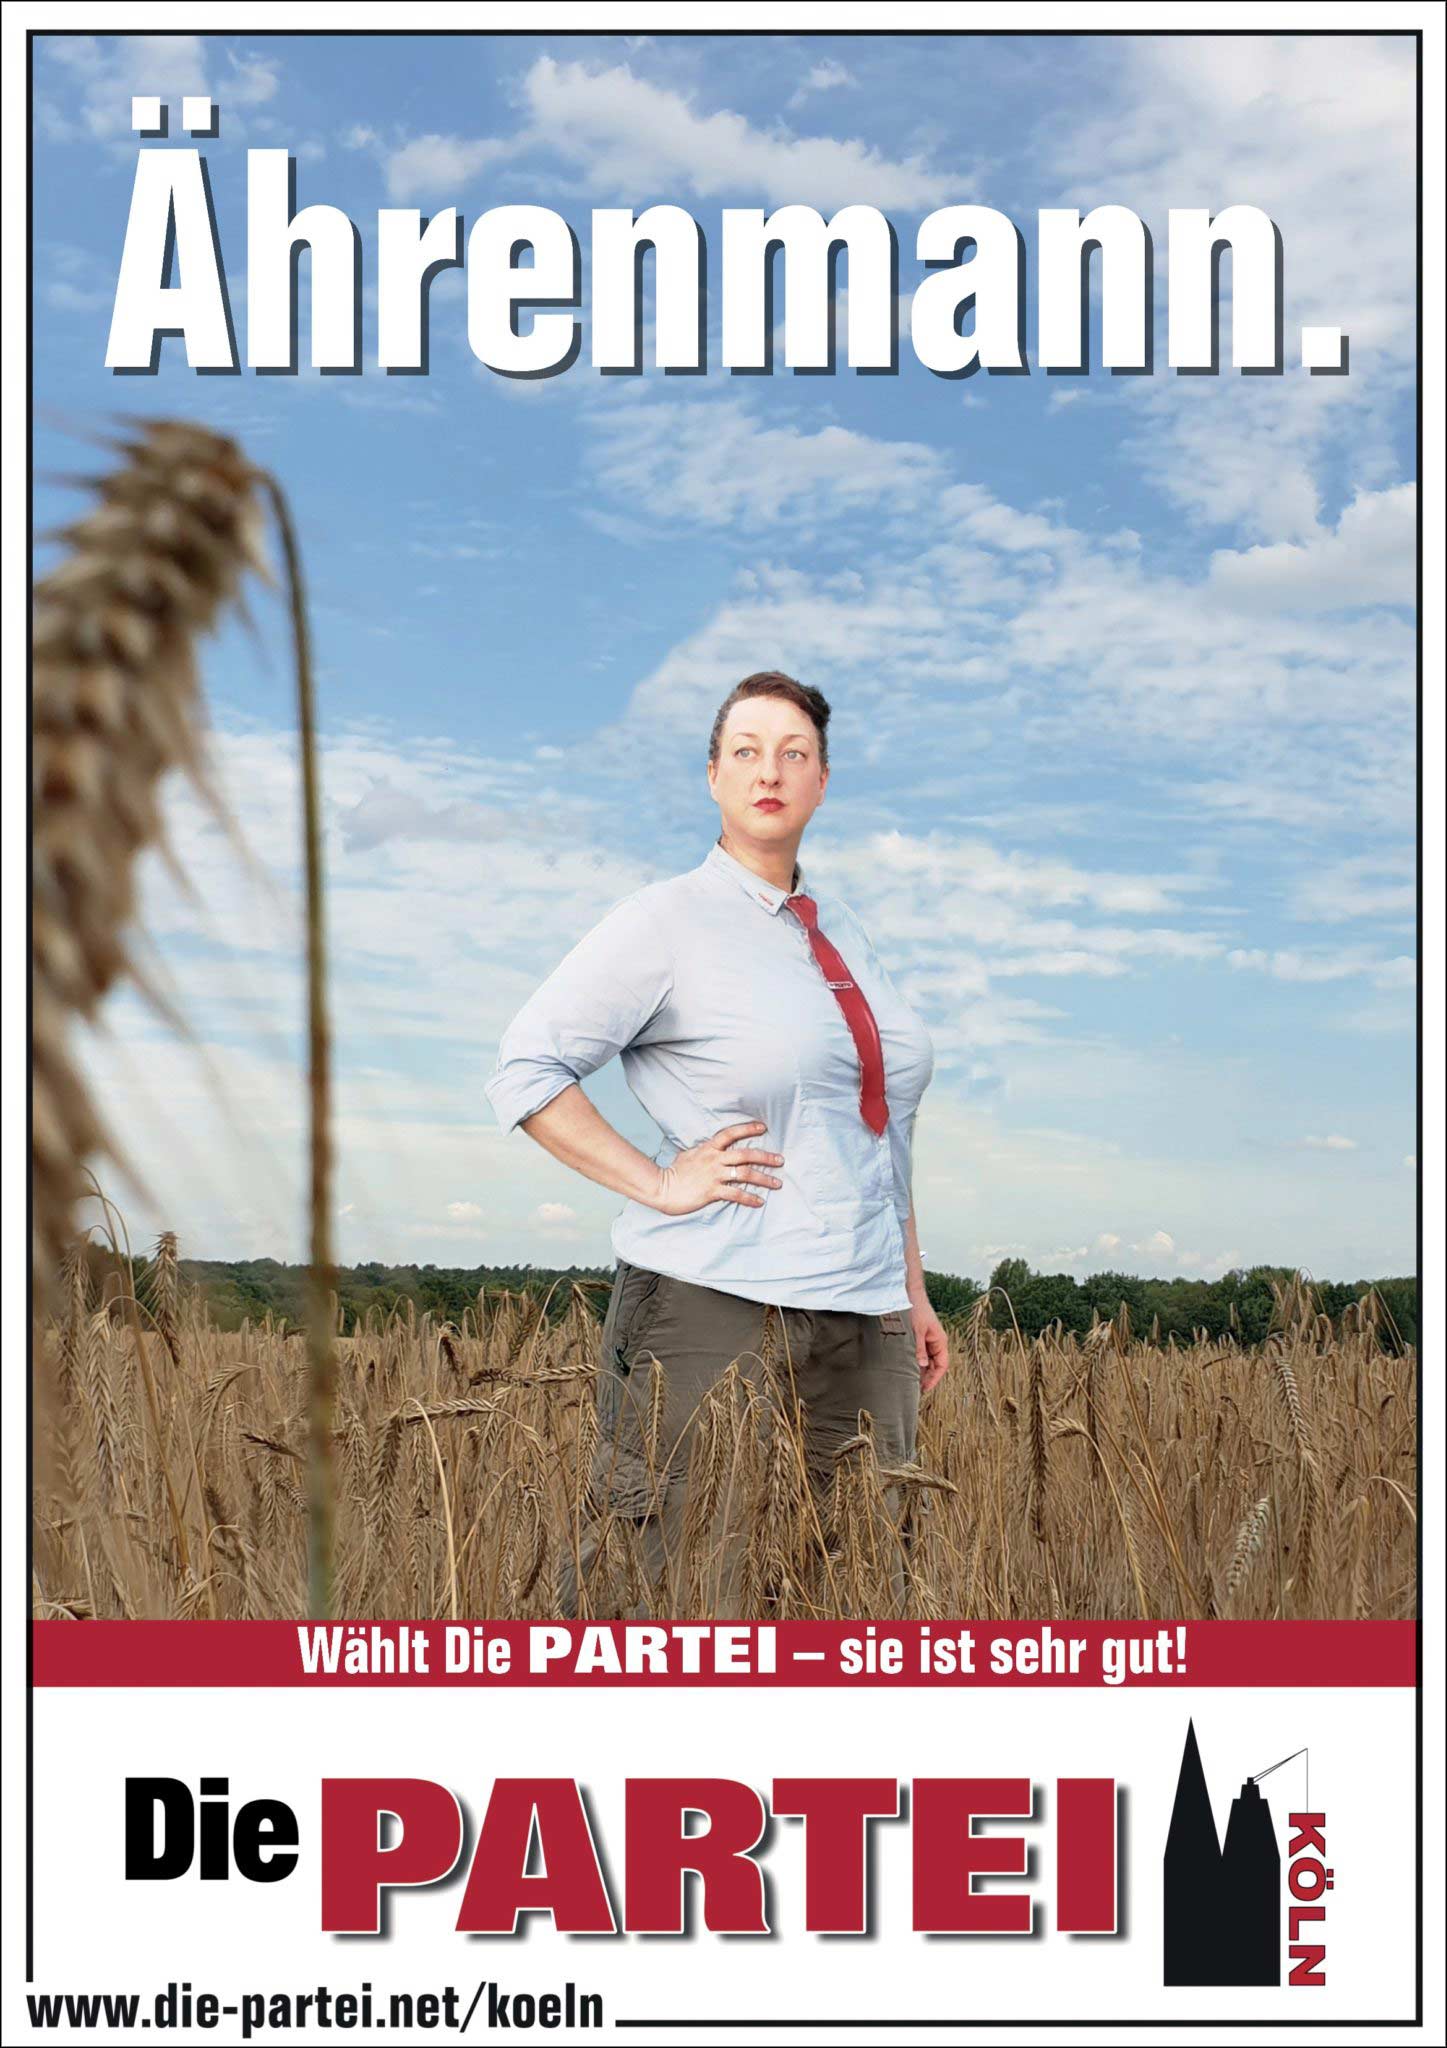 Ährenmann Wahlplakat